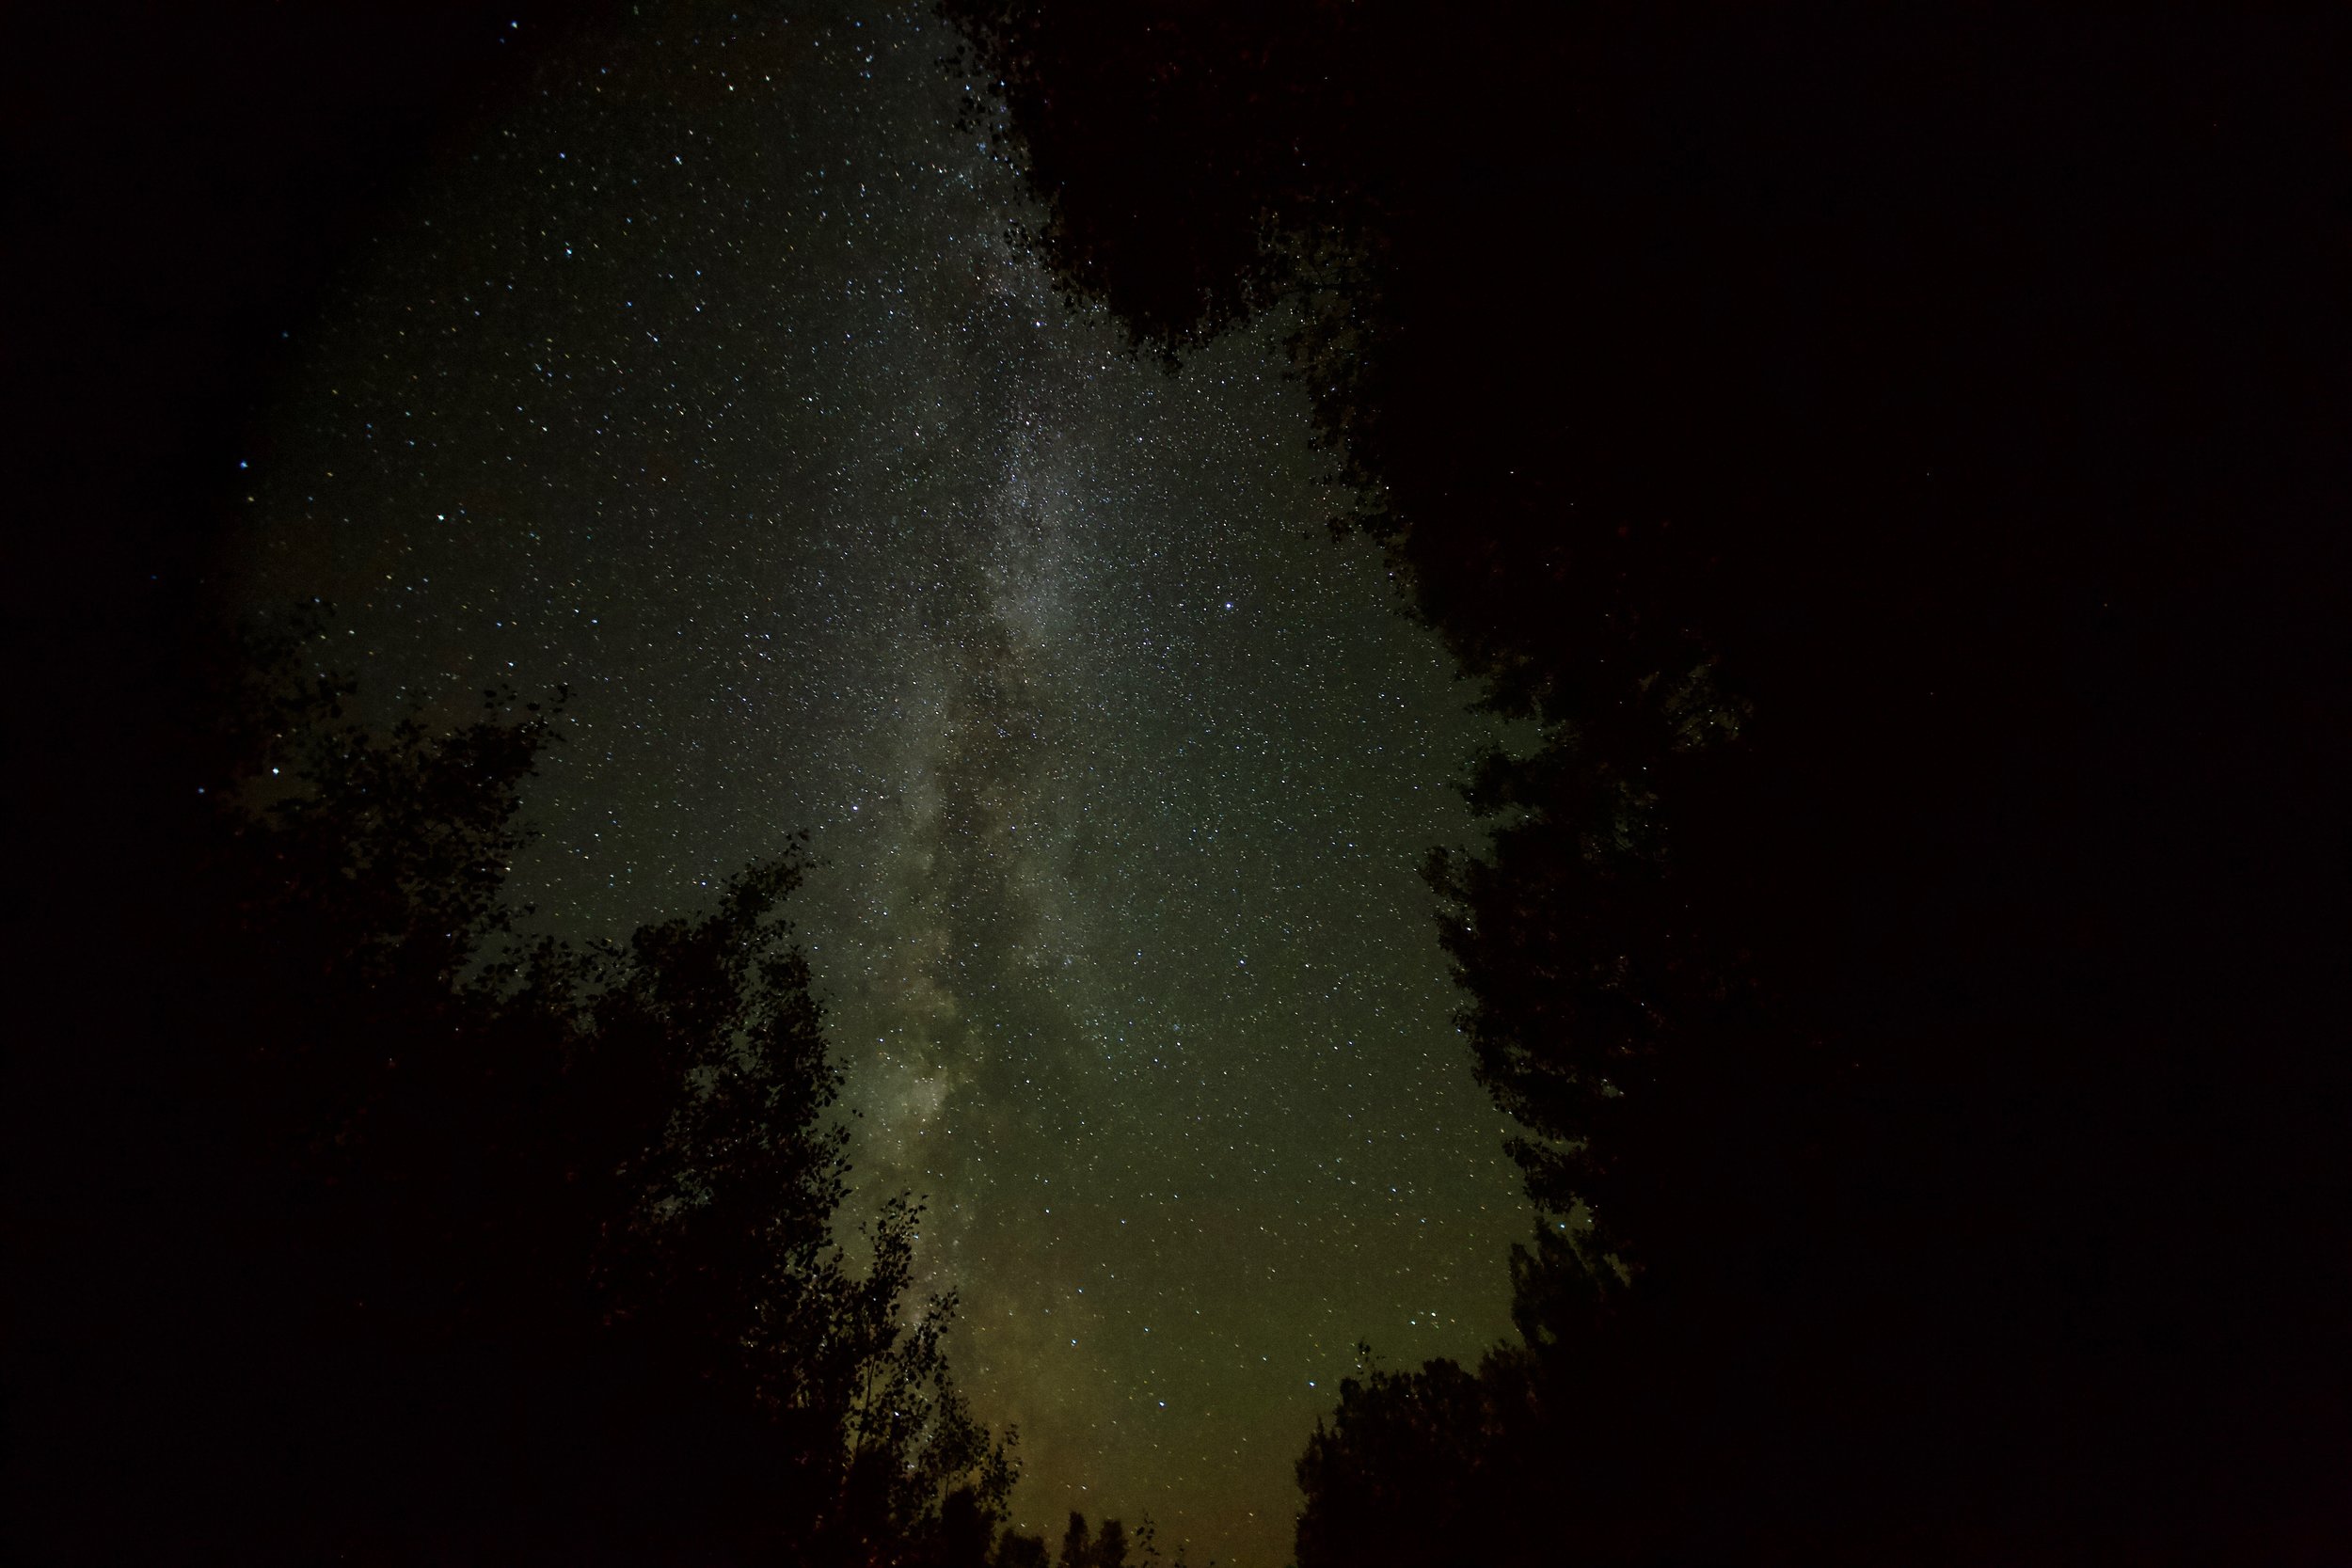 star gazing-dark skies-meteor shower-quebec-ottawa